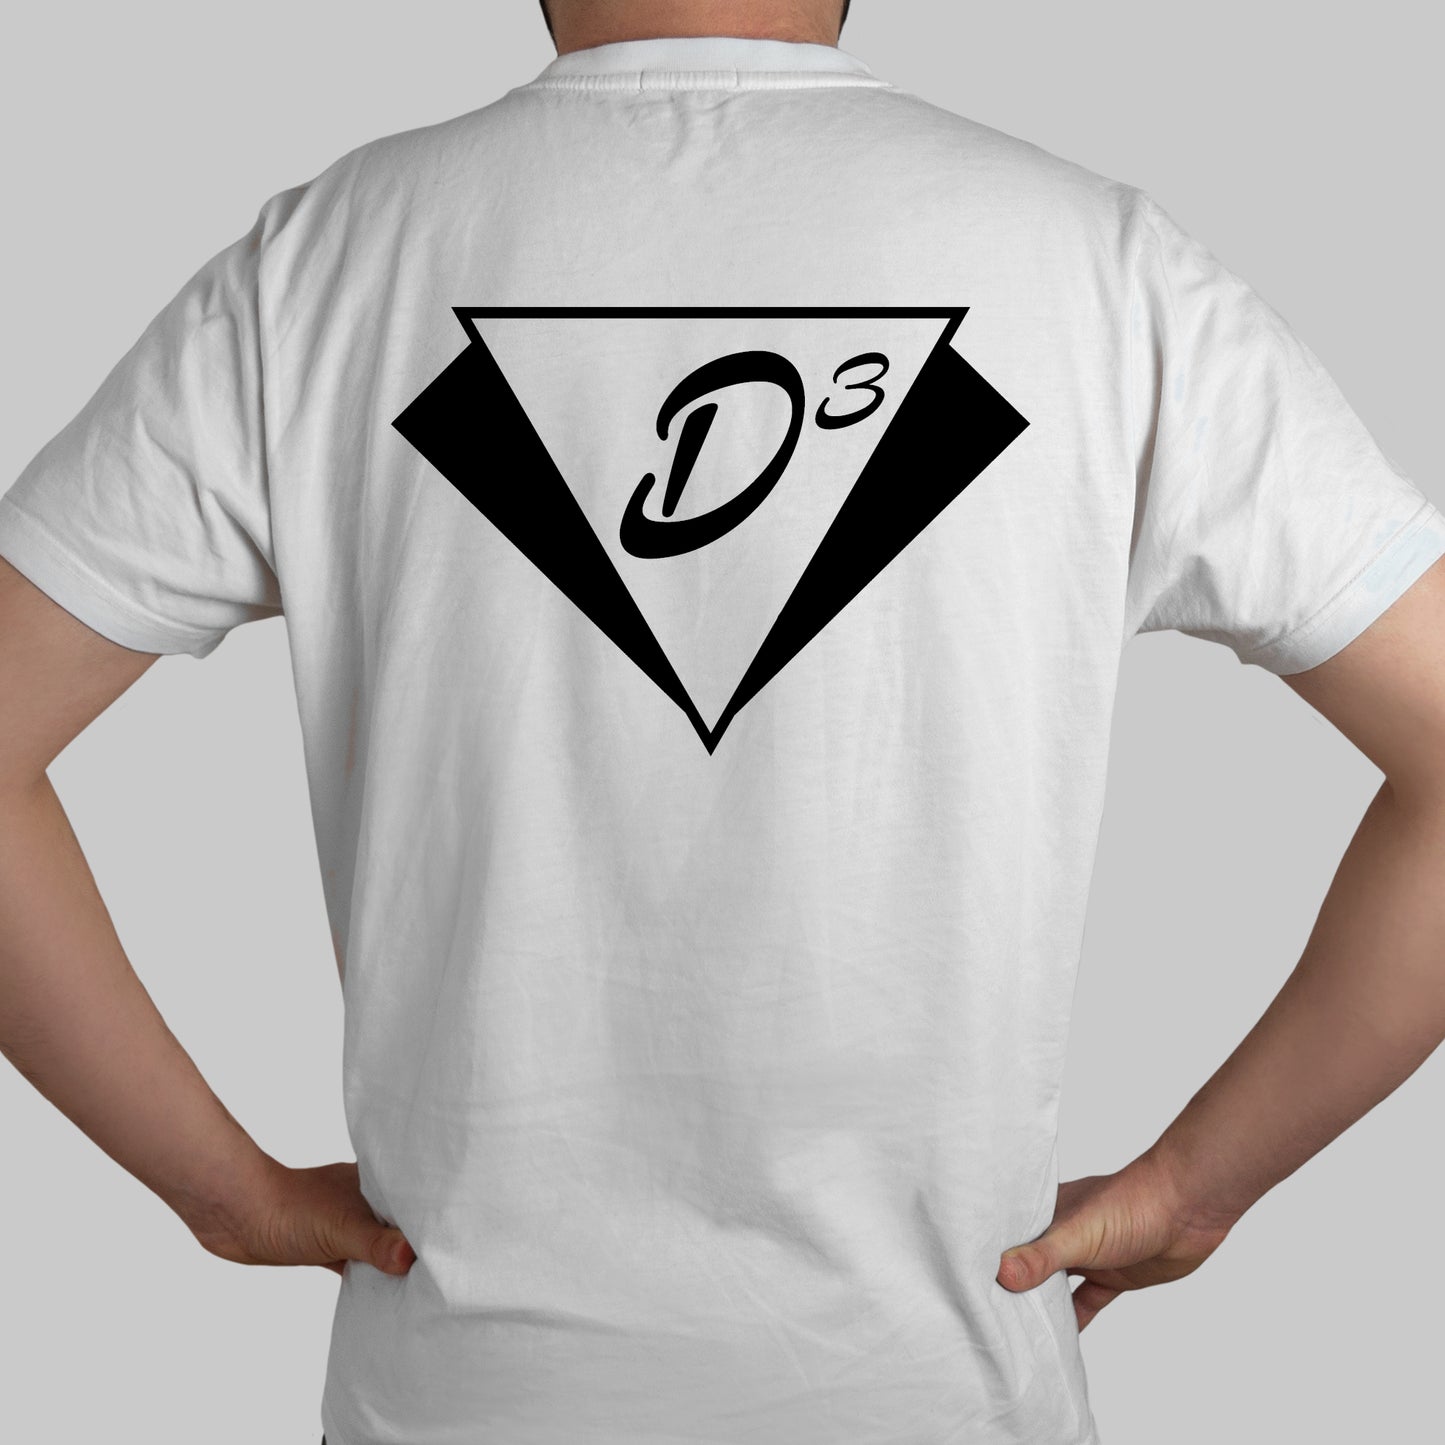 D3 FAN CREW - T-Shirt - weiß